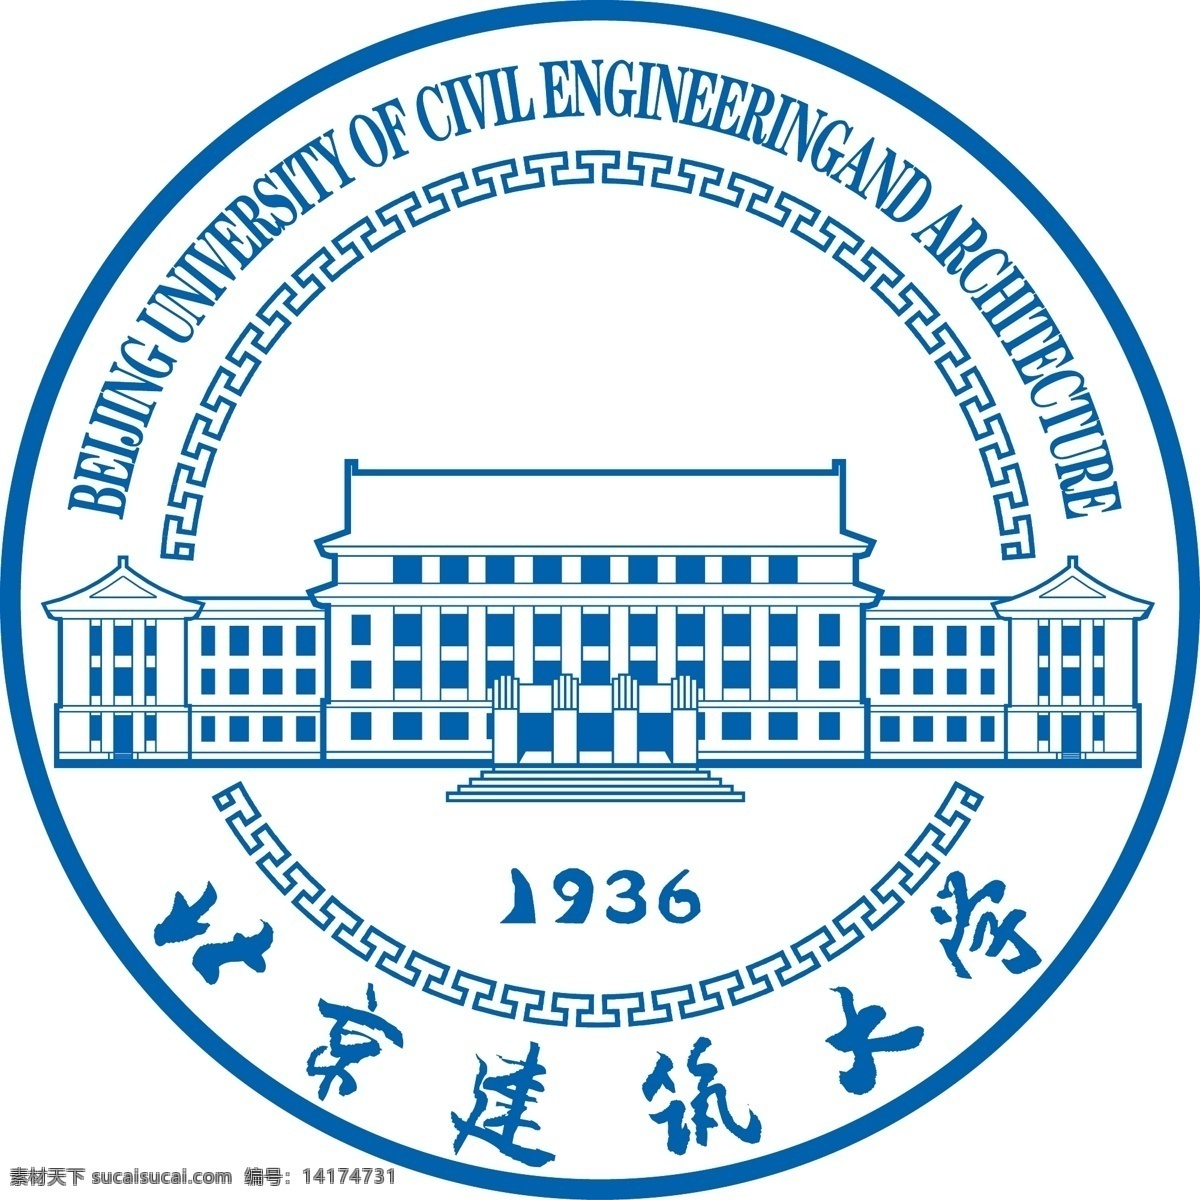 北京建筑大学 建筑 大学 北京 logo 矢量 标志图标 公共标识标志